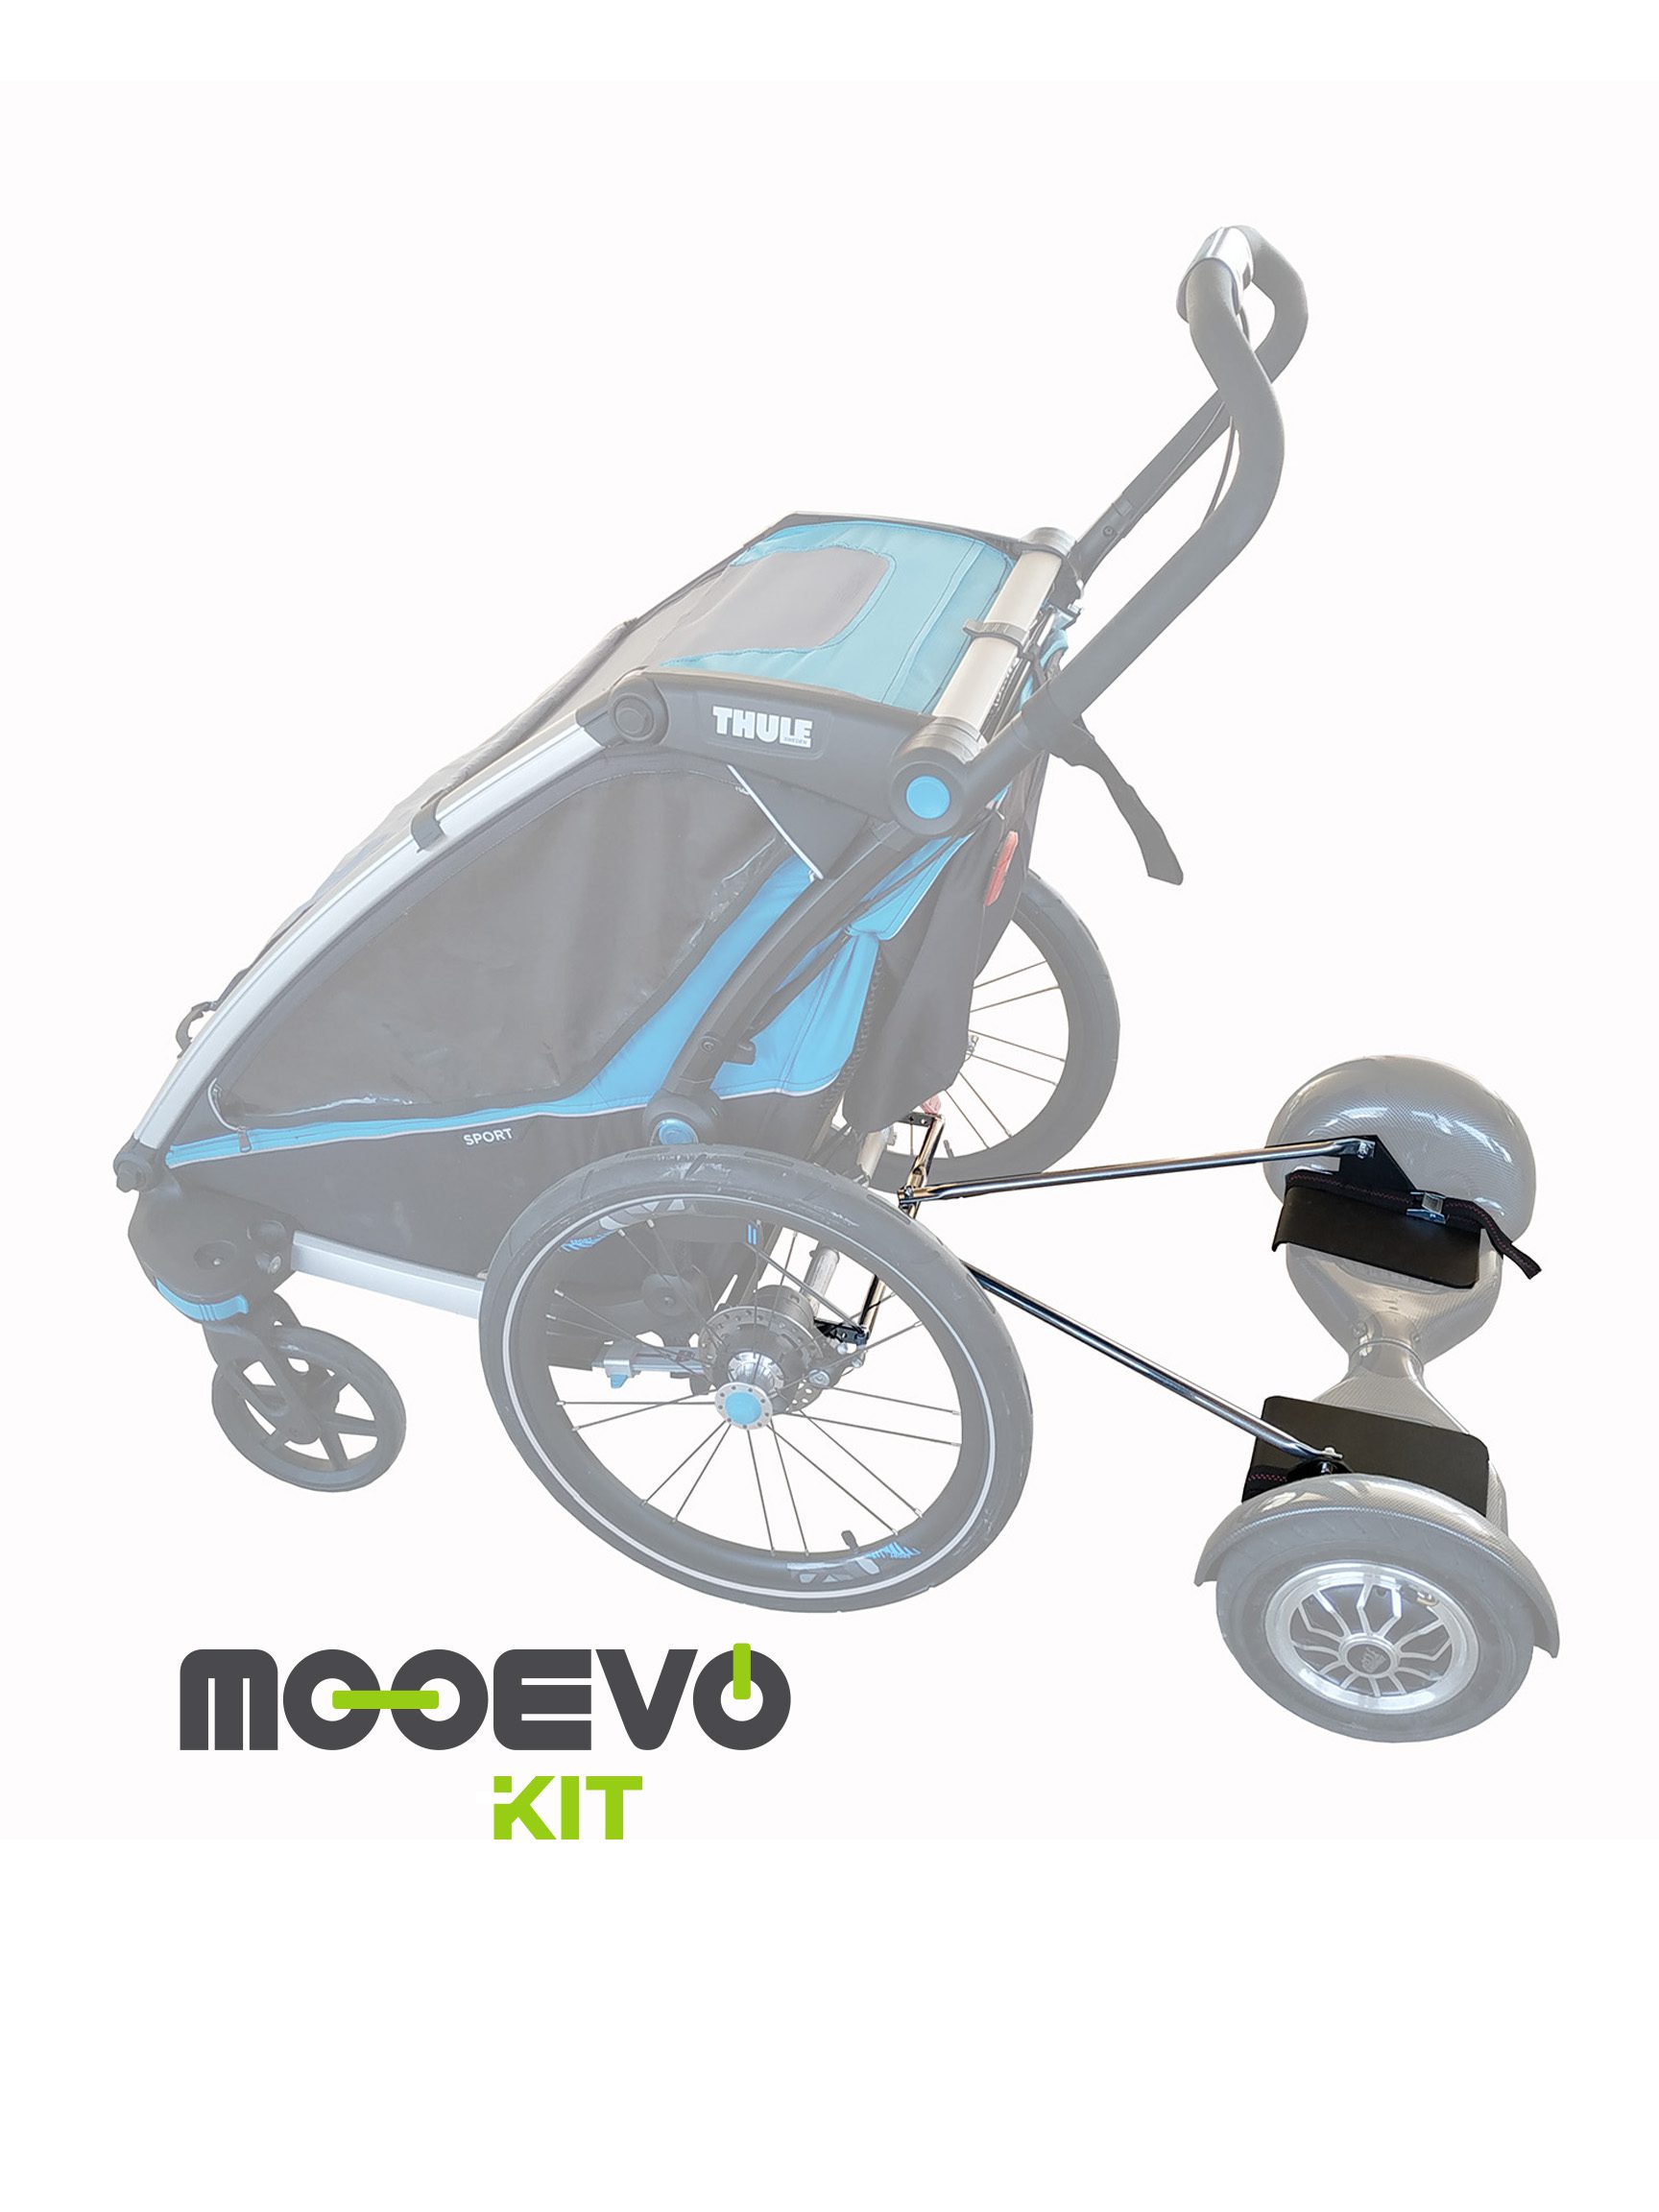 Mooevo Kit Adaptador Hoverboard a Silla de Ruedas - Mooevo Go